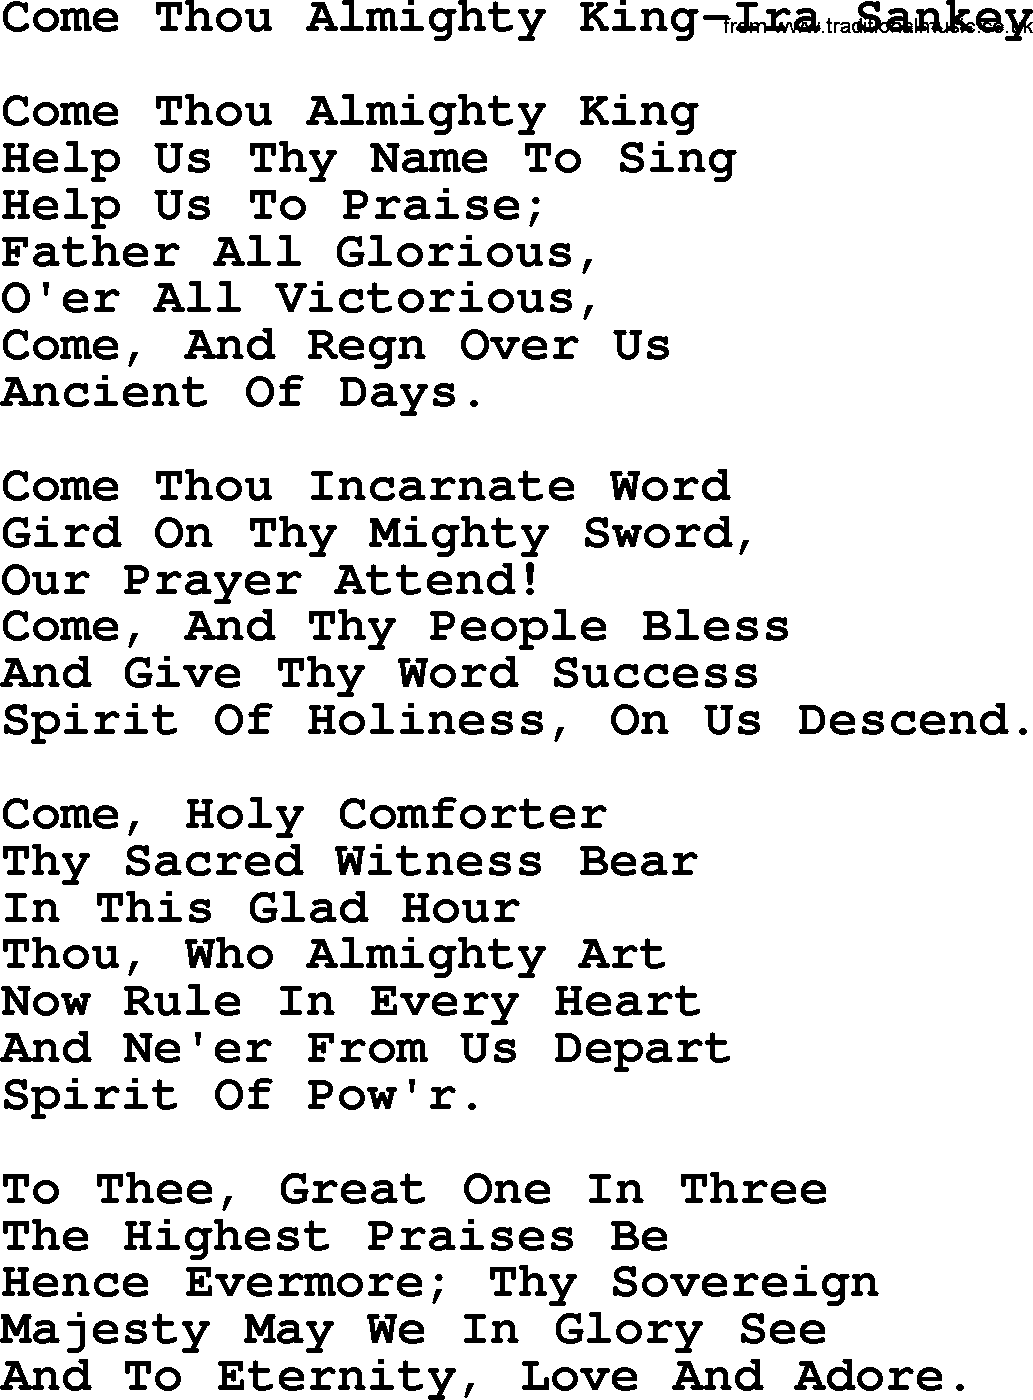 Ira Sankey hymn: Come Thou Almighty King-Ira Sankey, lyrics